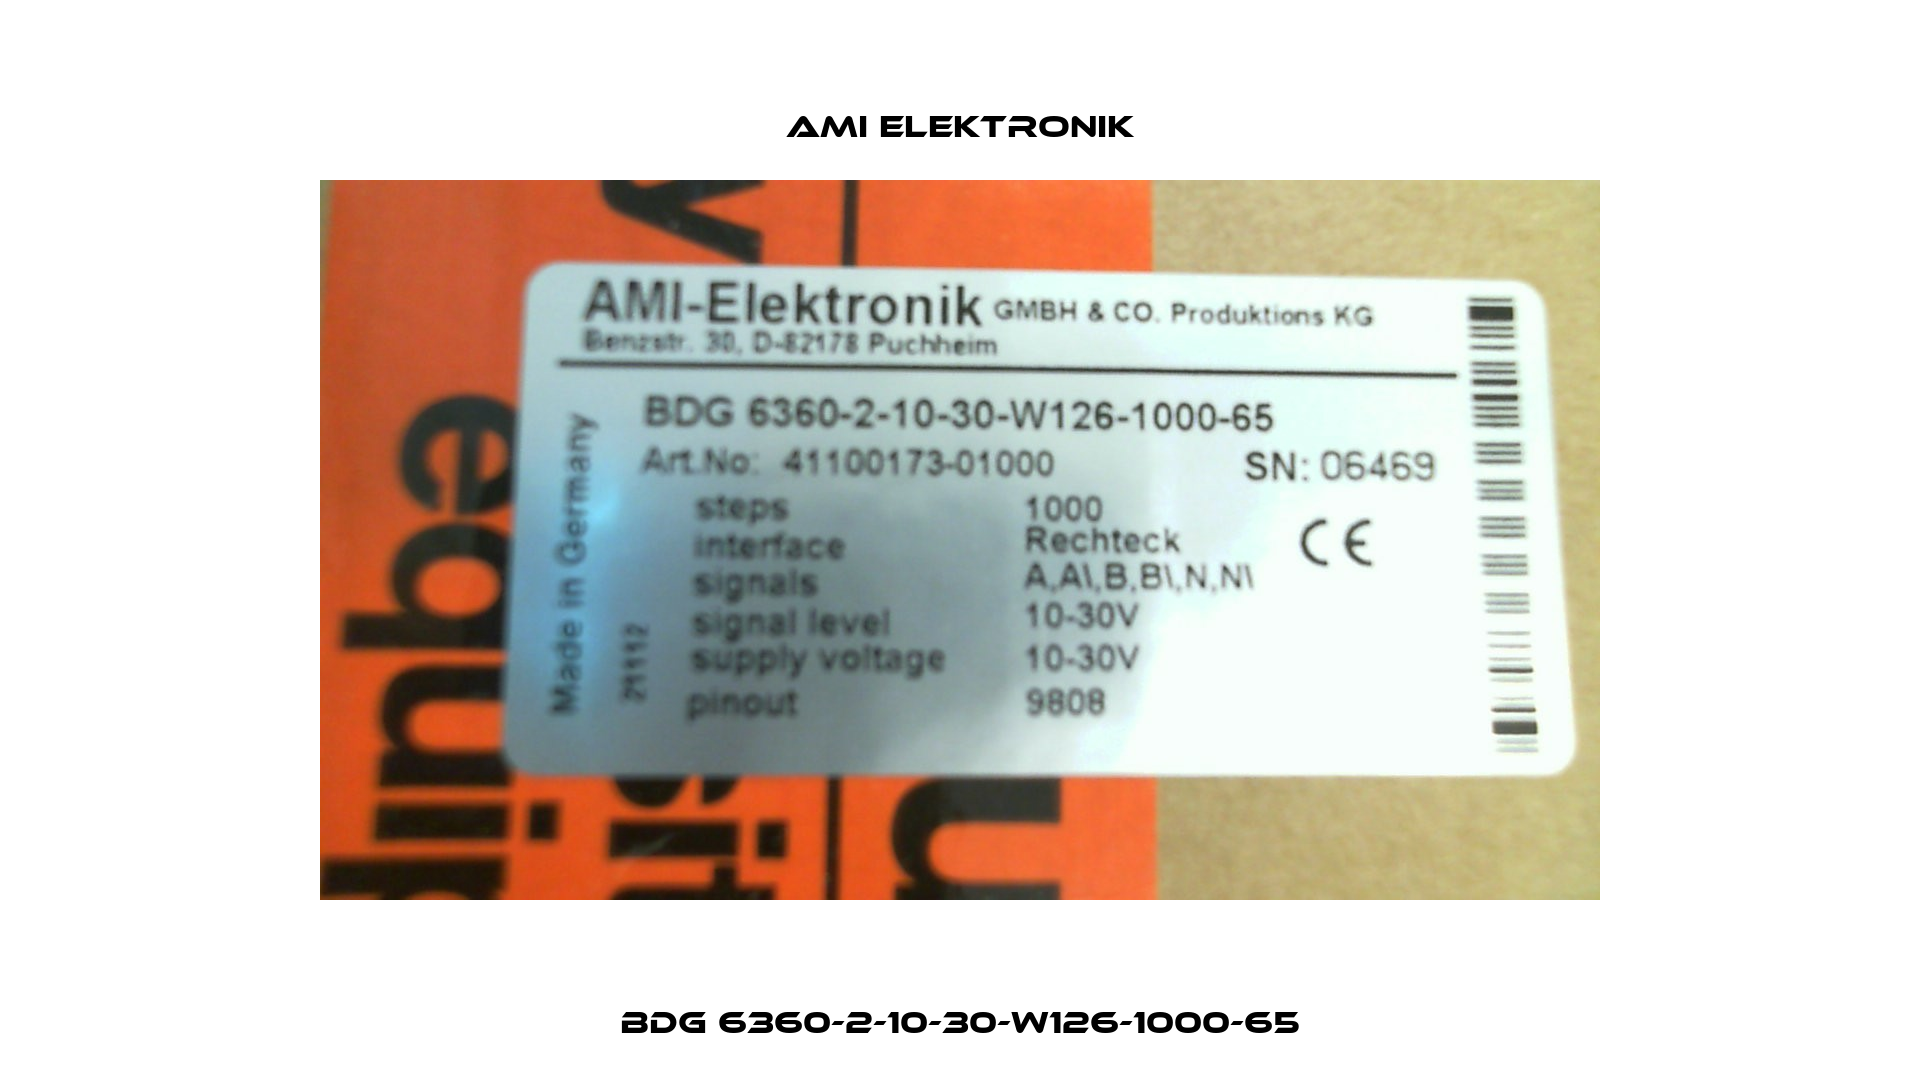 BDG 6360-2-10-30-W126-1000-65 Ami Elektronik